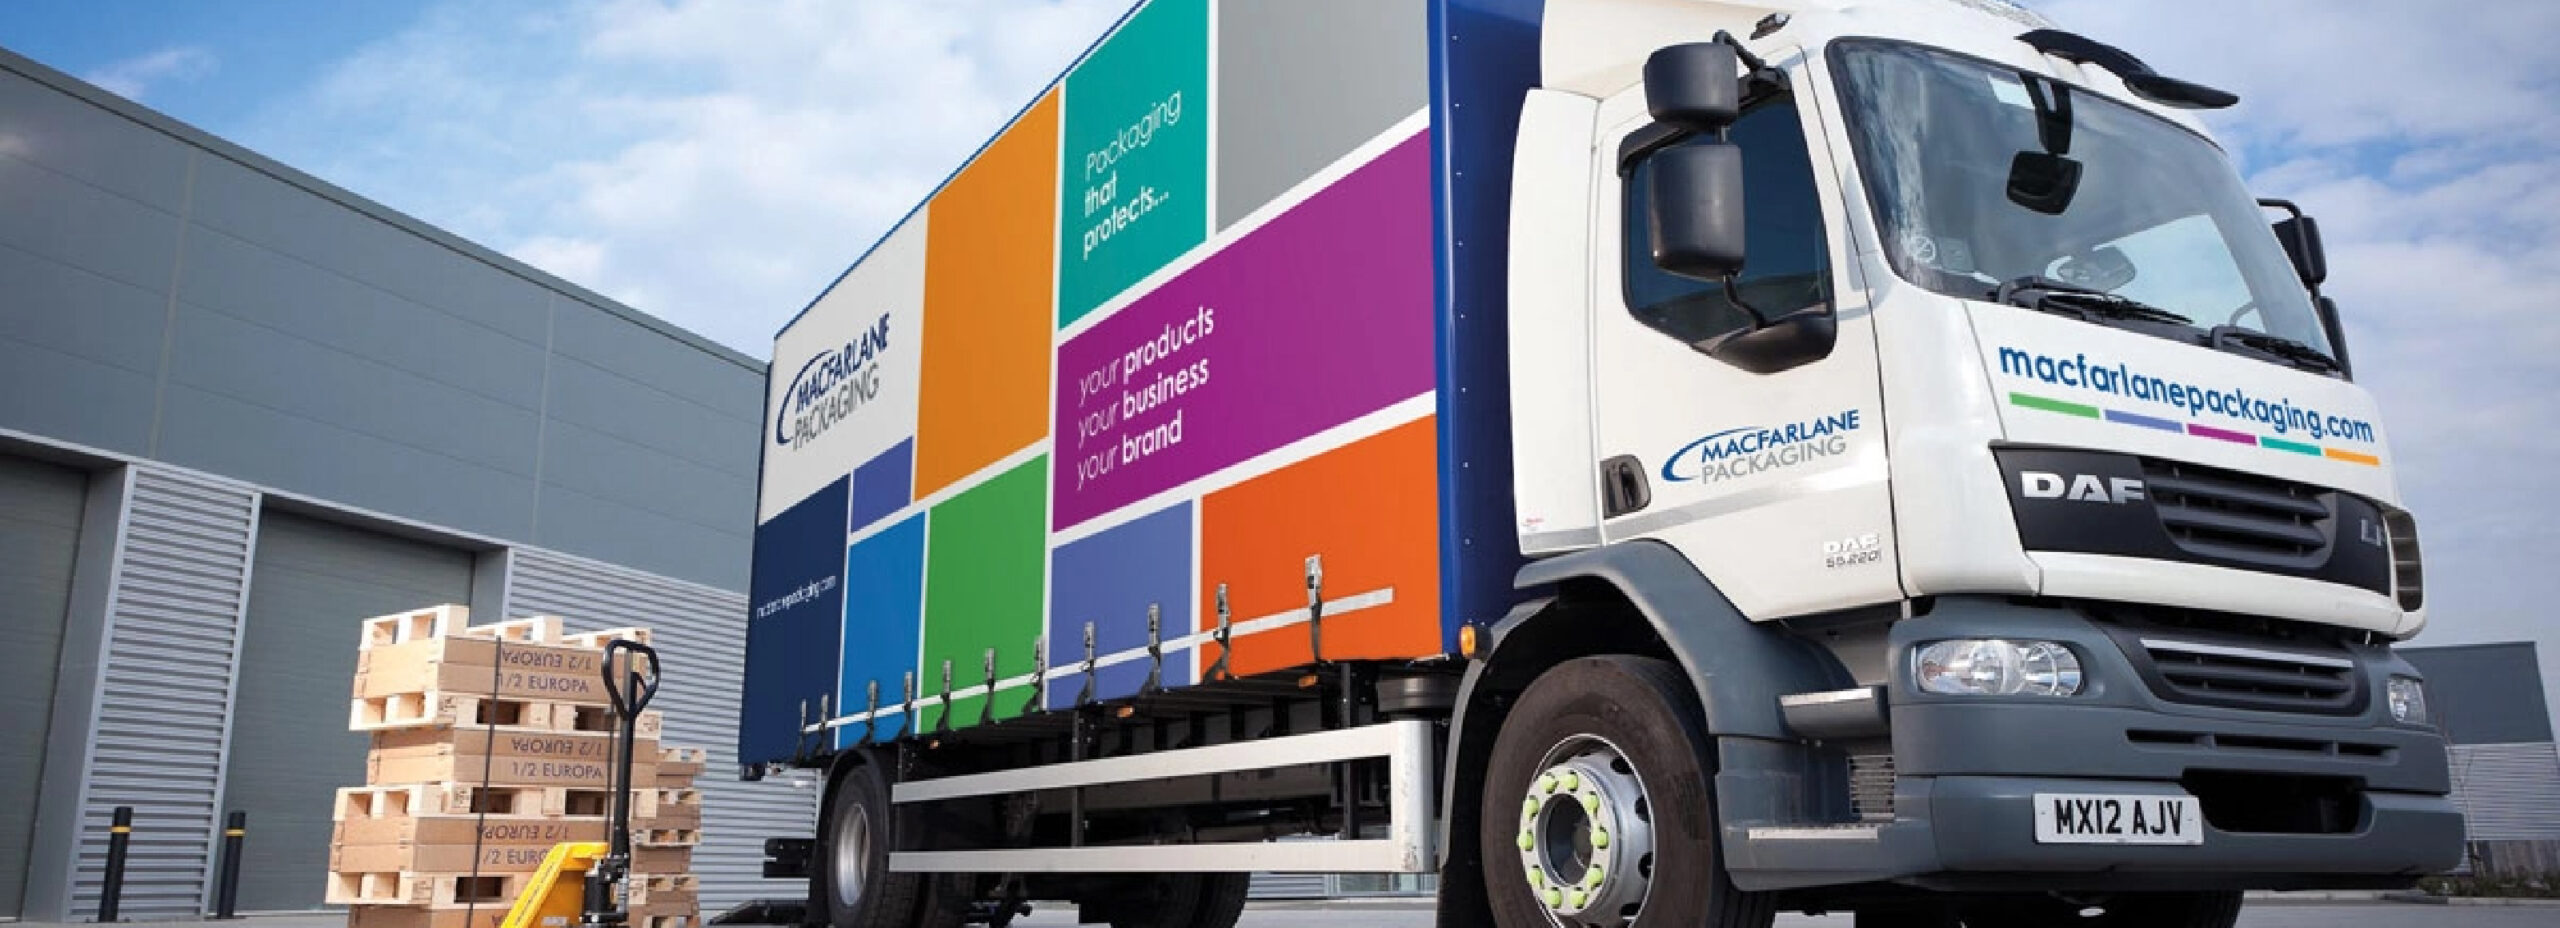 Macfarlane Packaging delivery truck, packaging materials, packaging companies uk